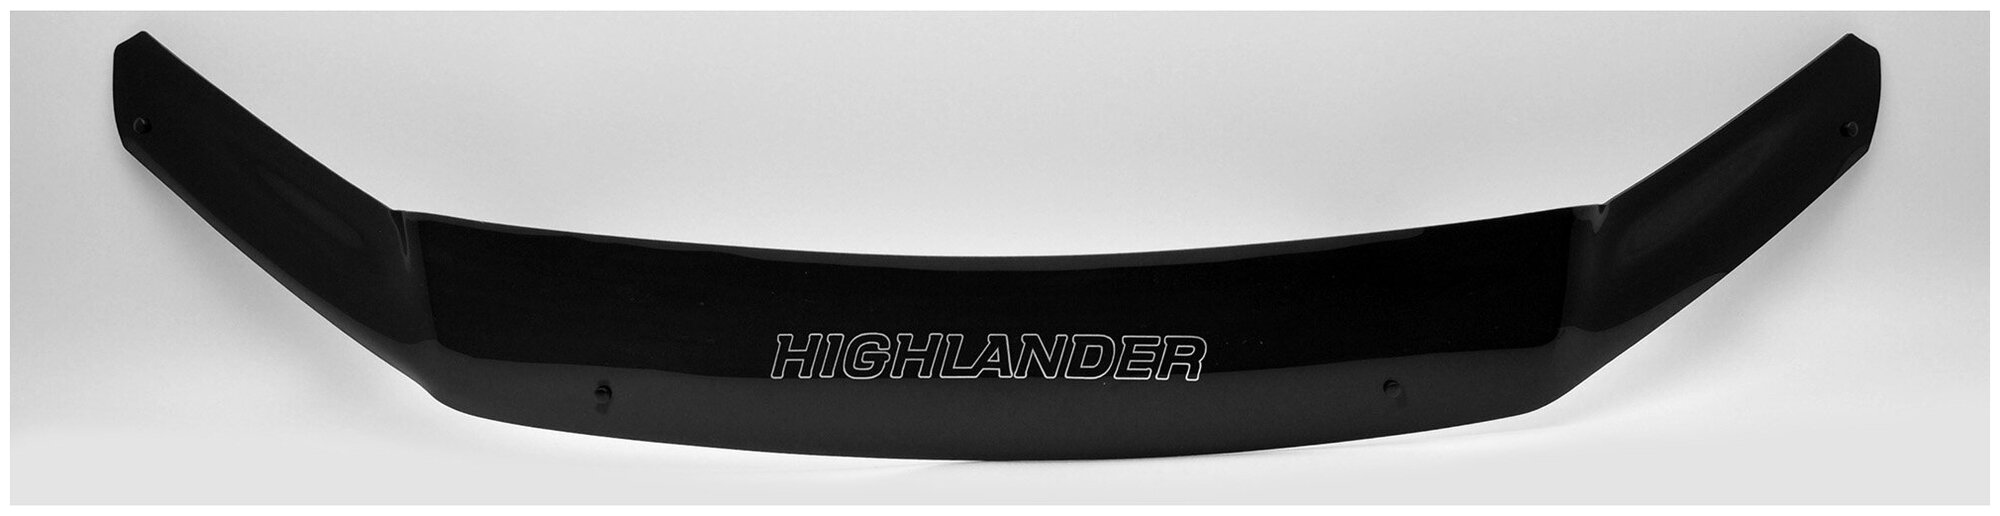 Дефлектор капота Defly Original для Toyota Highlander 2010-2013